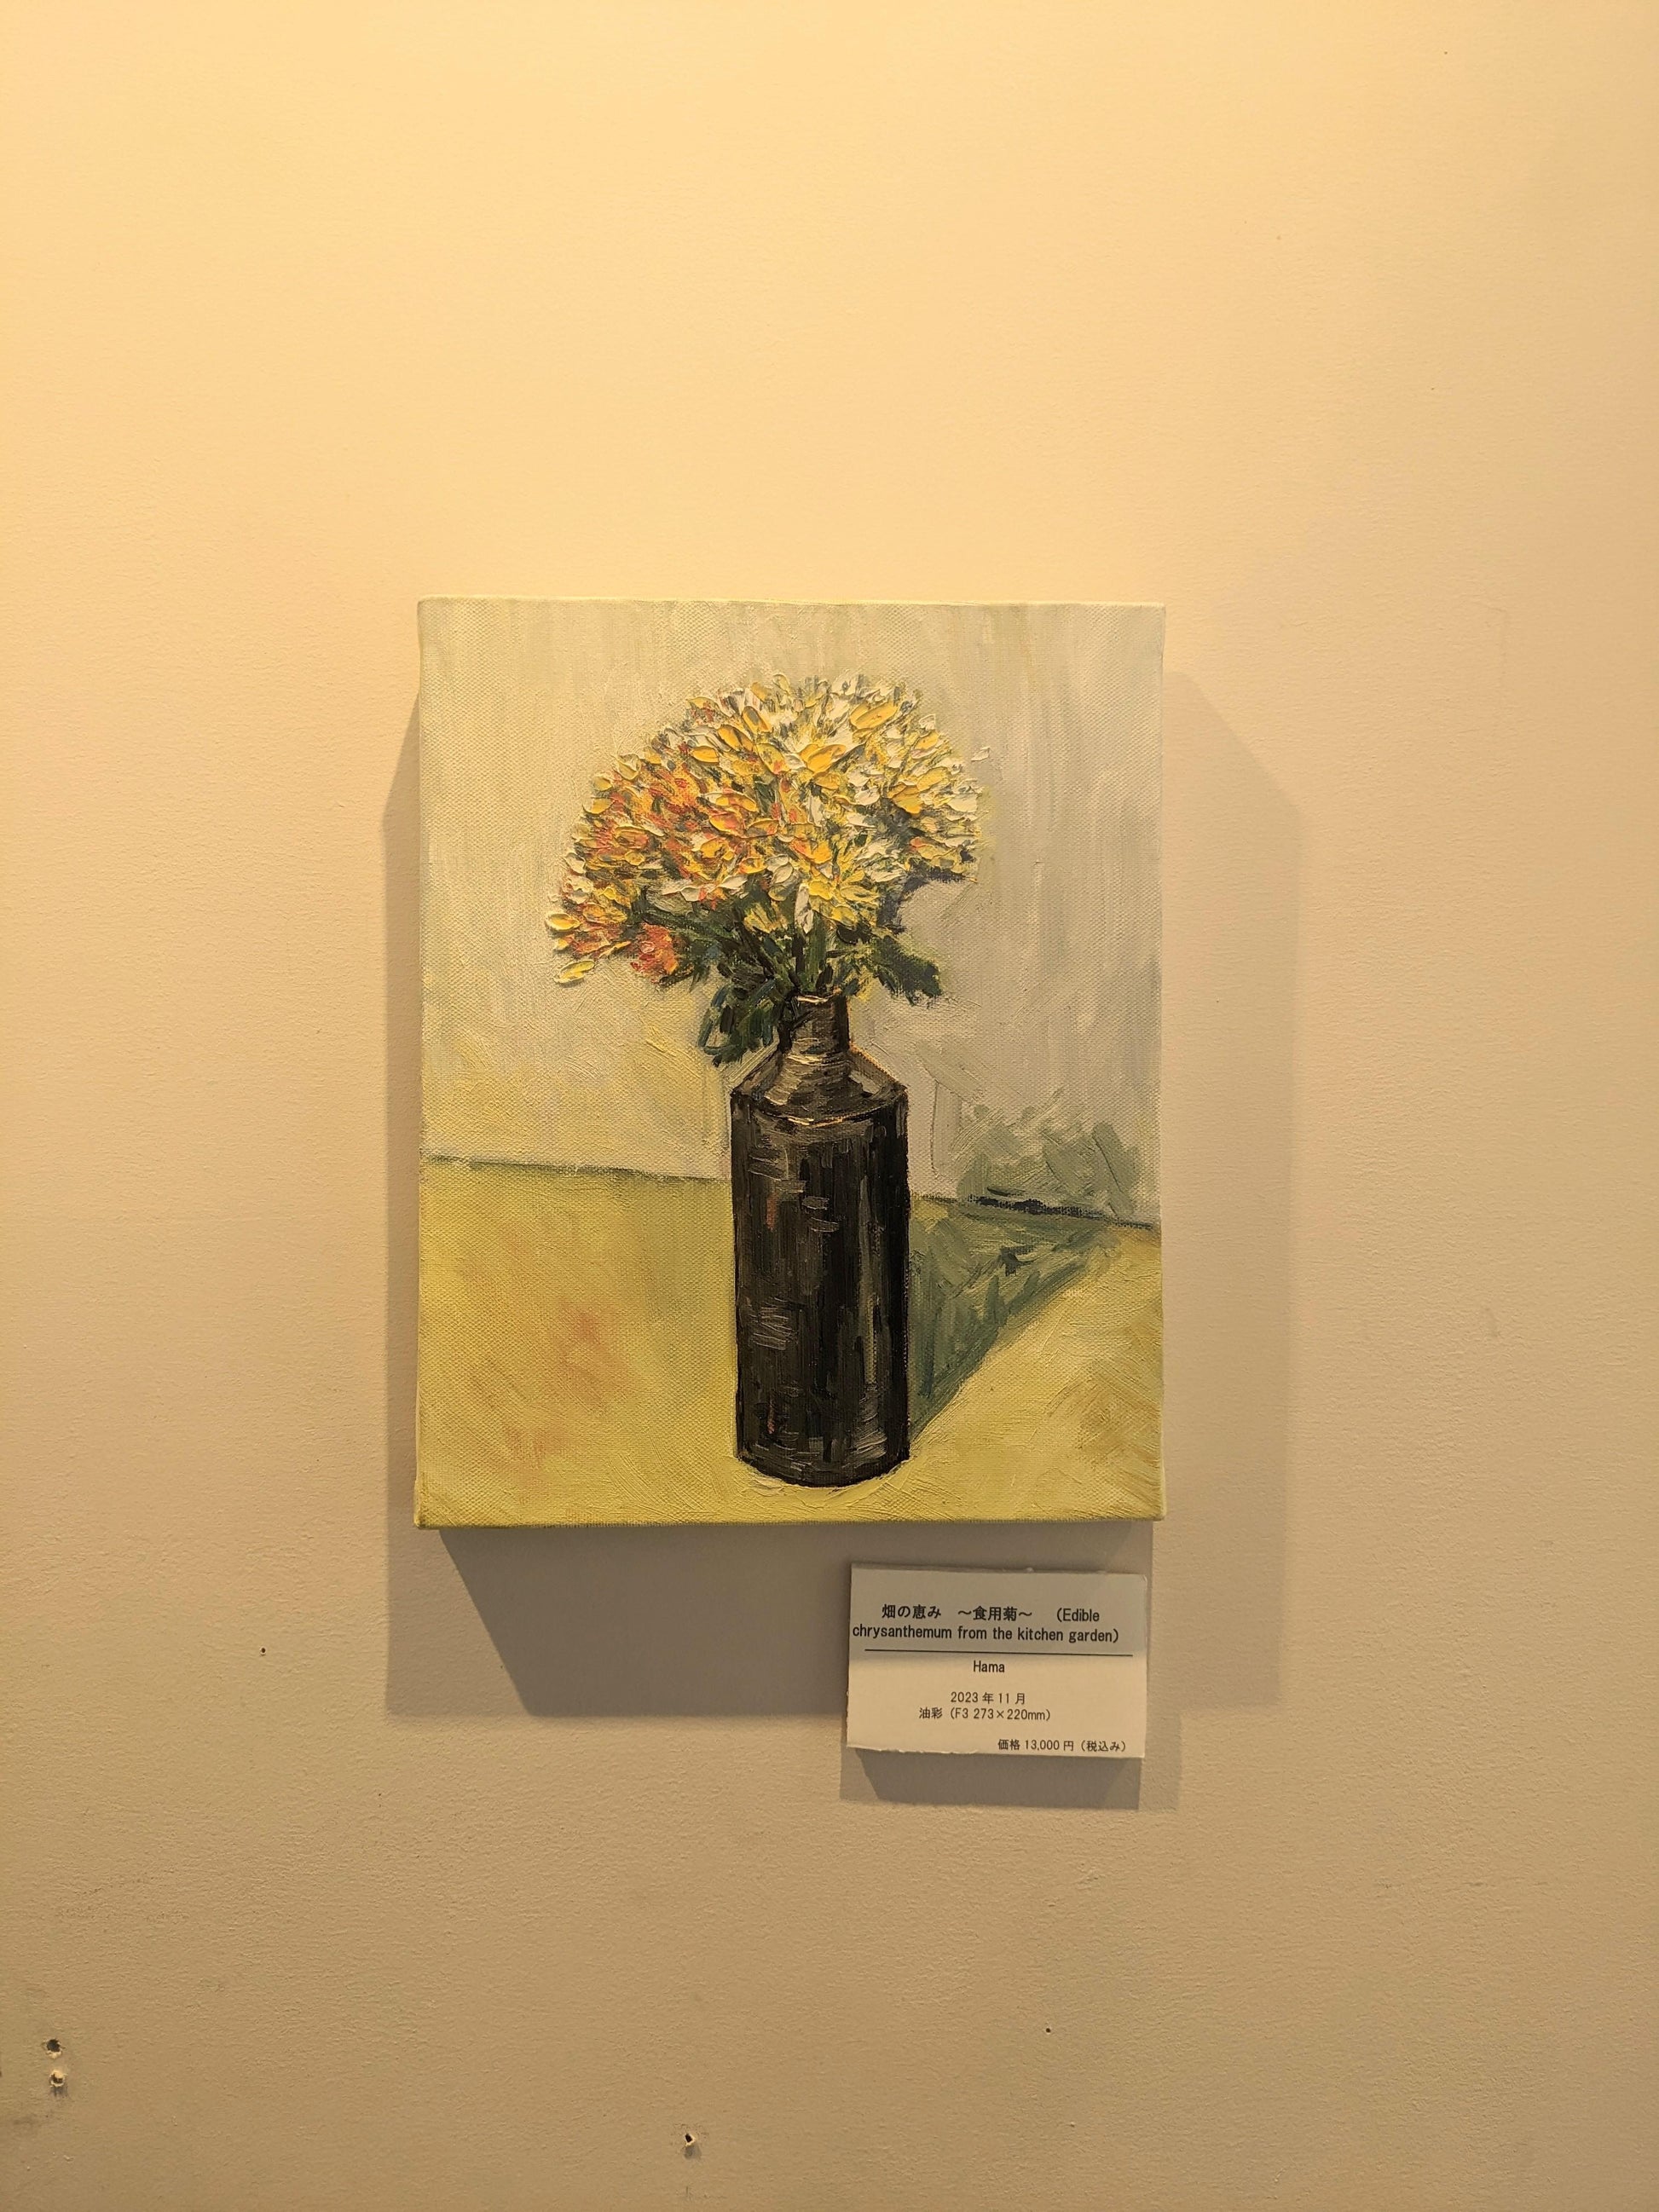 『畑の恵み　〜食用菊〜 (Edible chrysanthemum from the kitchen garden)』 - FROM ARTIST